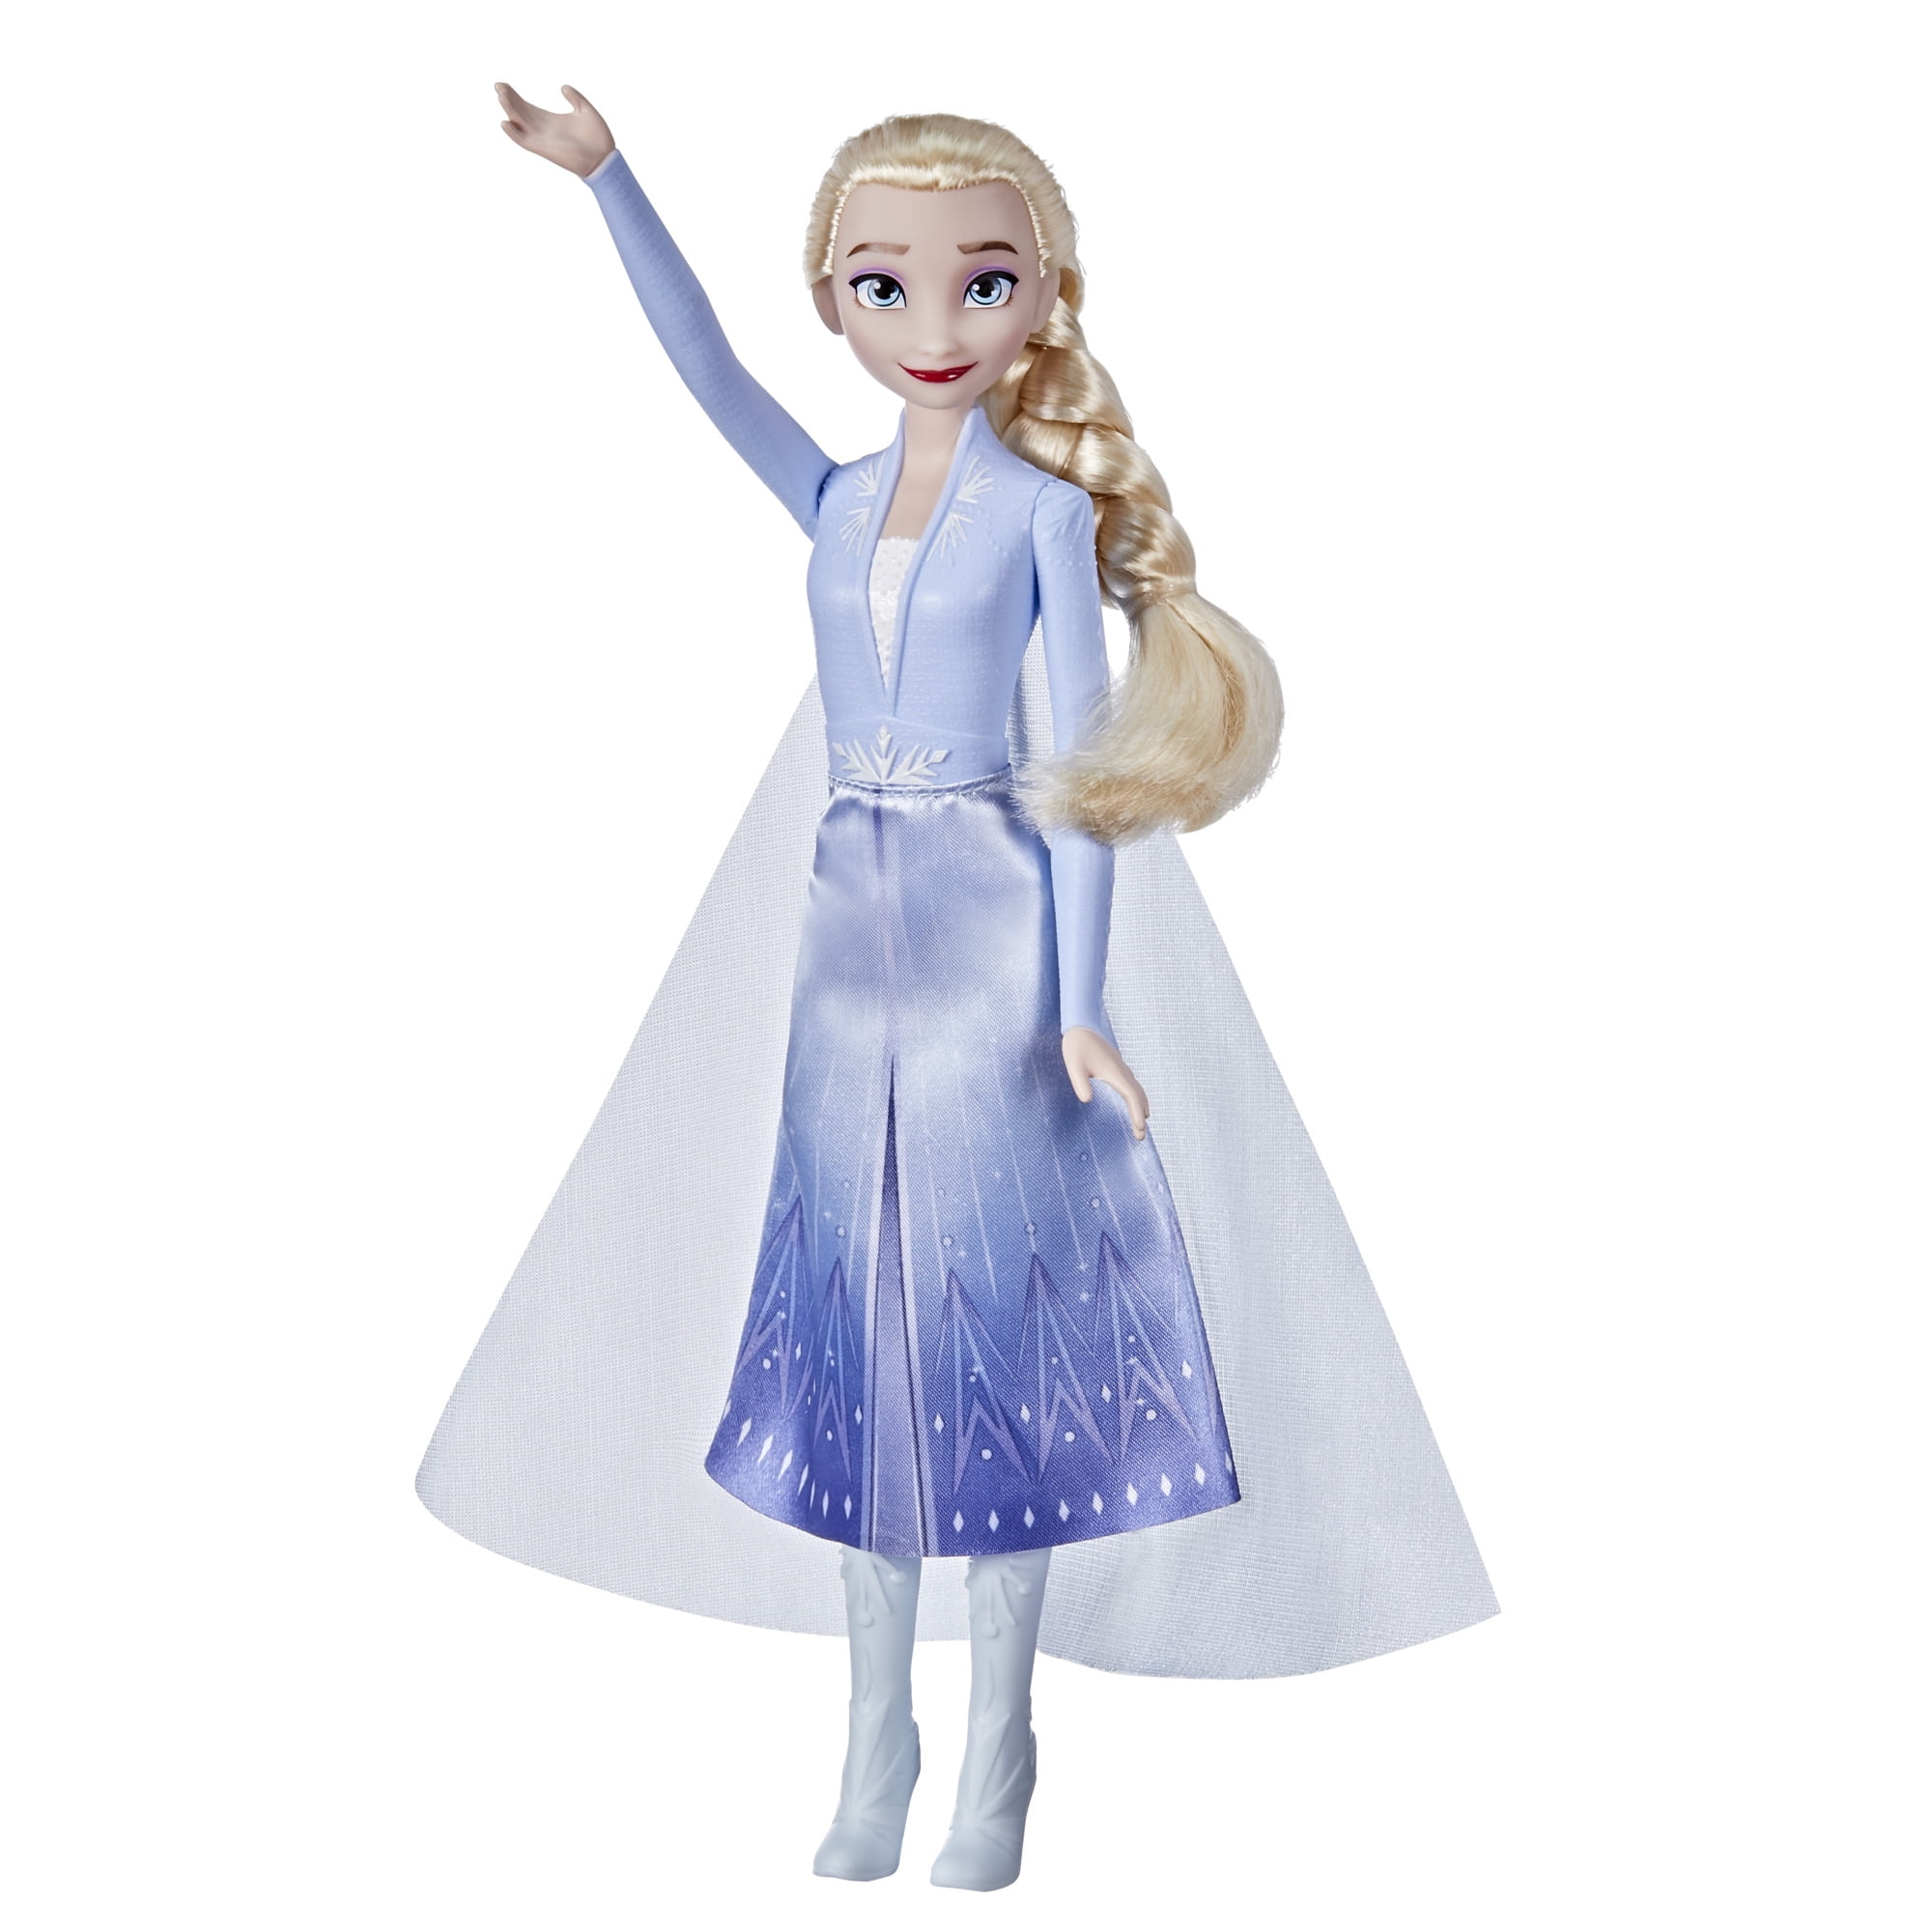 Disney Frozen Disney's Frozen 2 Elsa Frozen Shimmer Fashion Doll, Accessories Included